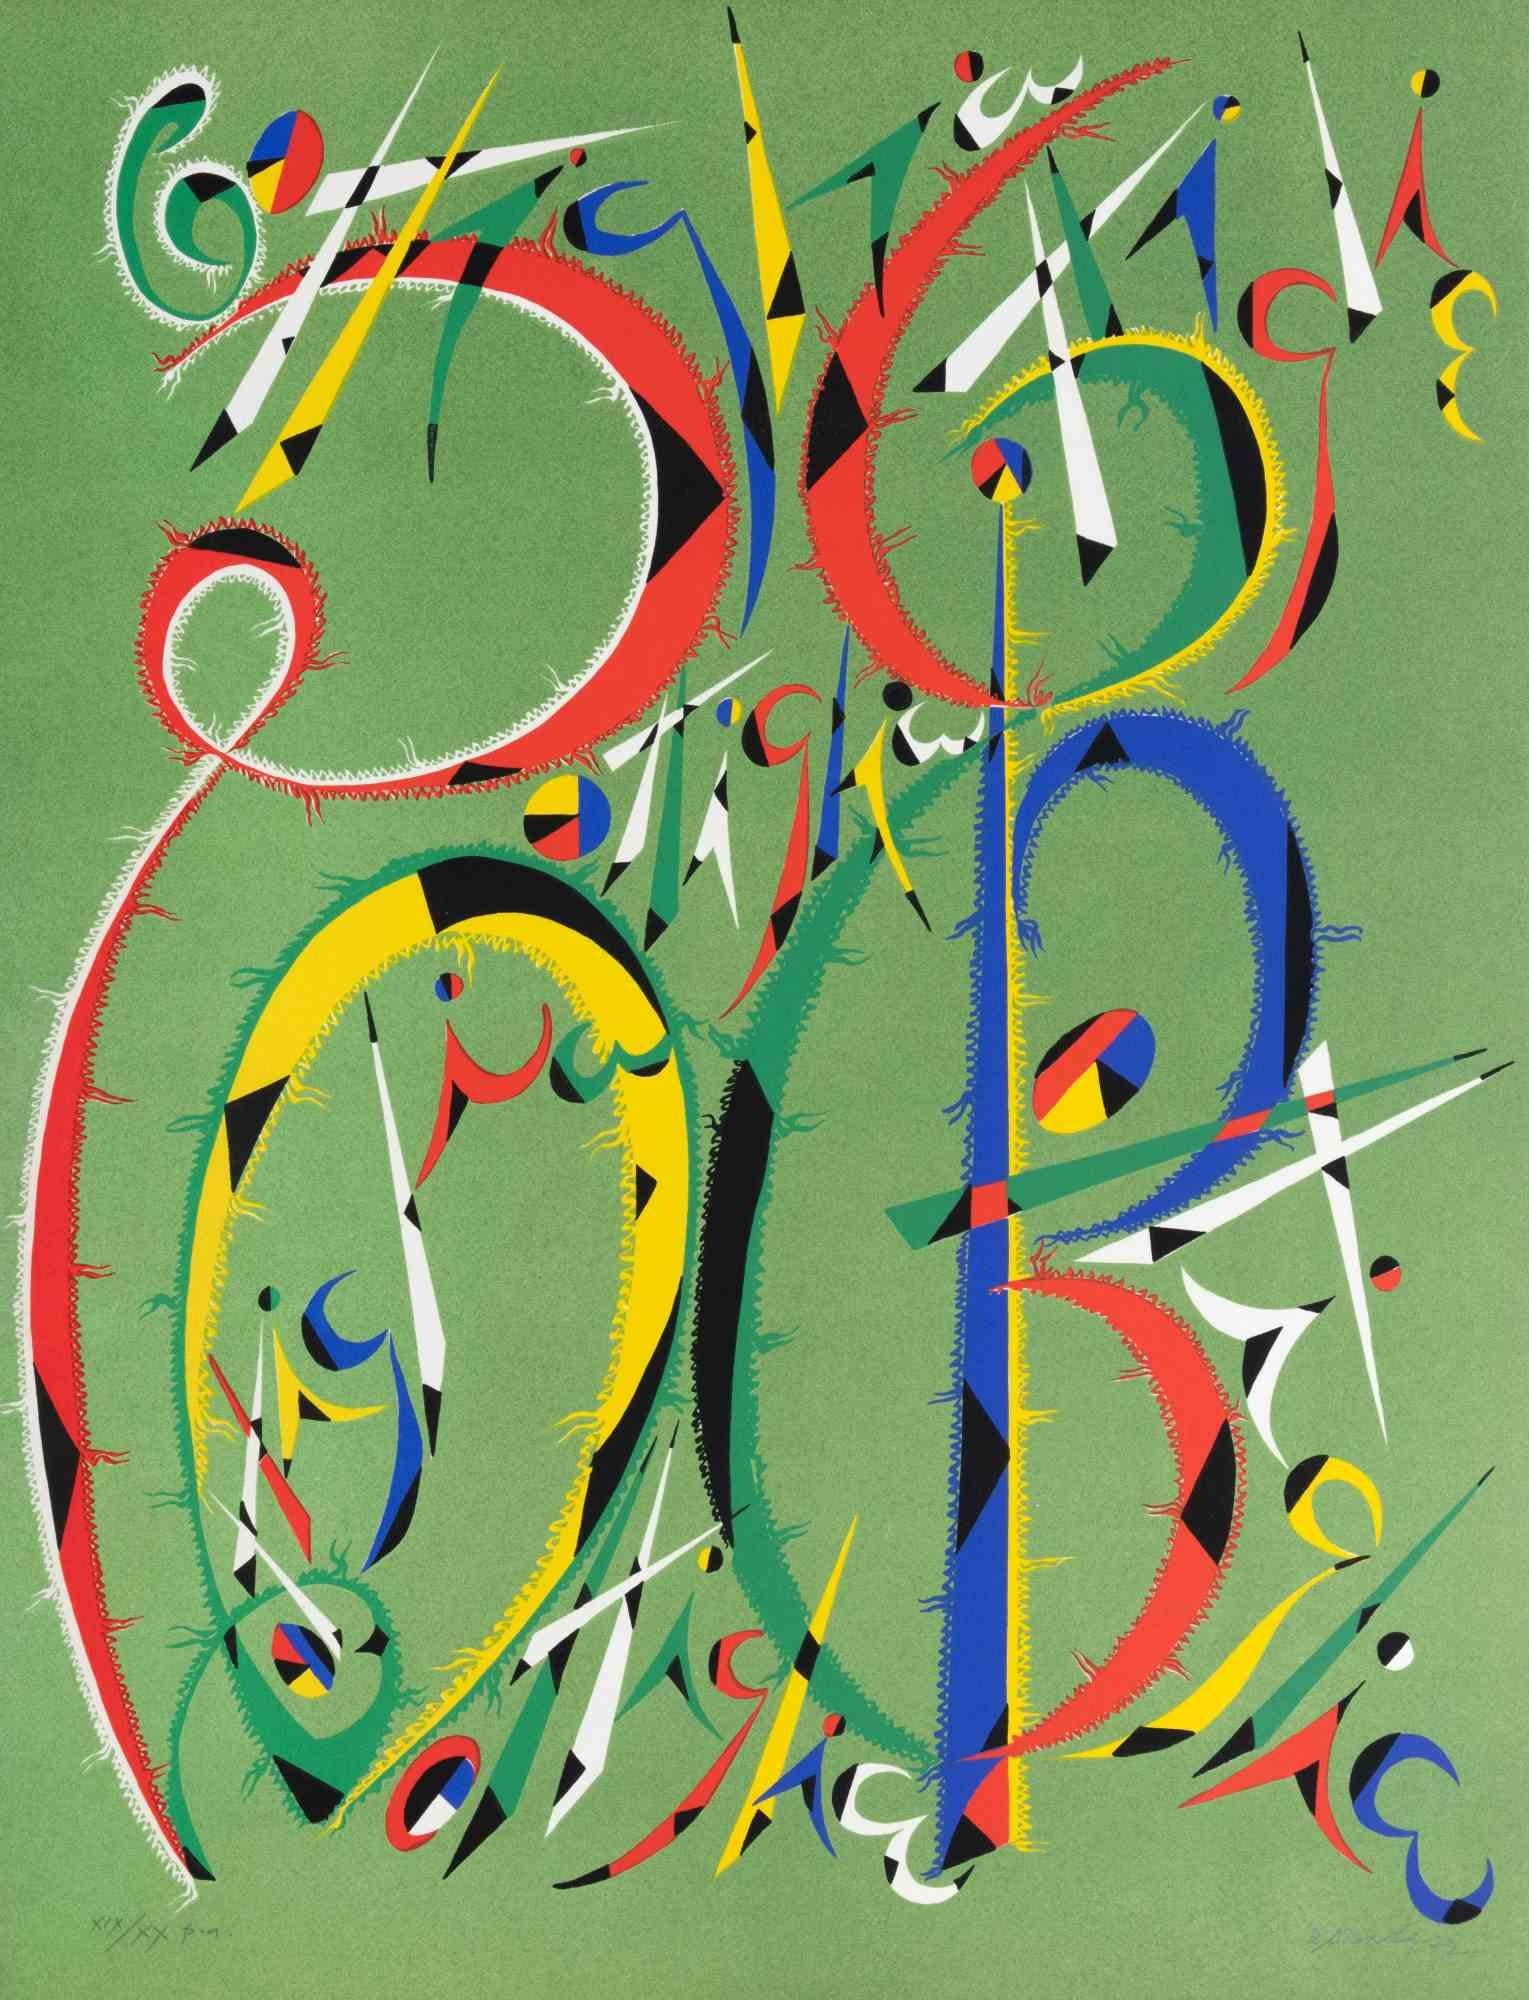 La lettre B de Rafael Alberti, de la série Alphabet, est une lithographie réalisée par Rafael Alberti en 1972.

Signé à la main et daté dans la marge inférieure droite. Numéroté en bas à gauche.

Édition du XIX/XX. 

L'œuvre d'art représente la